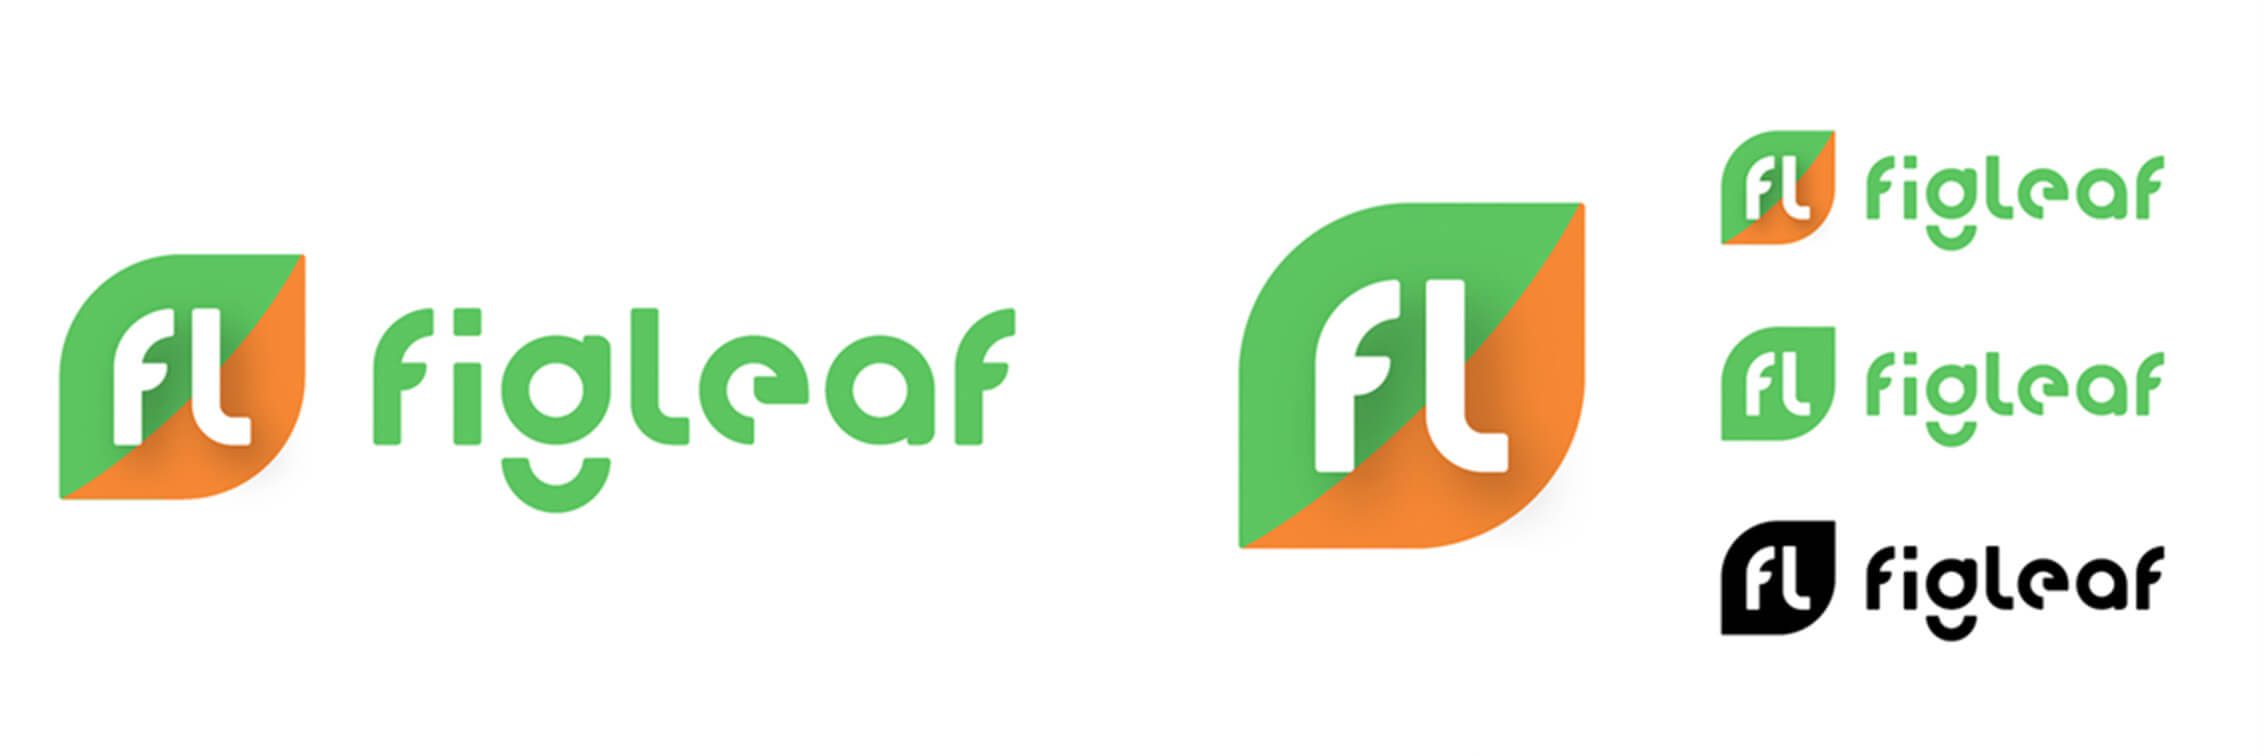 Mortar case study: FigLeaf logos